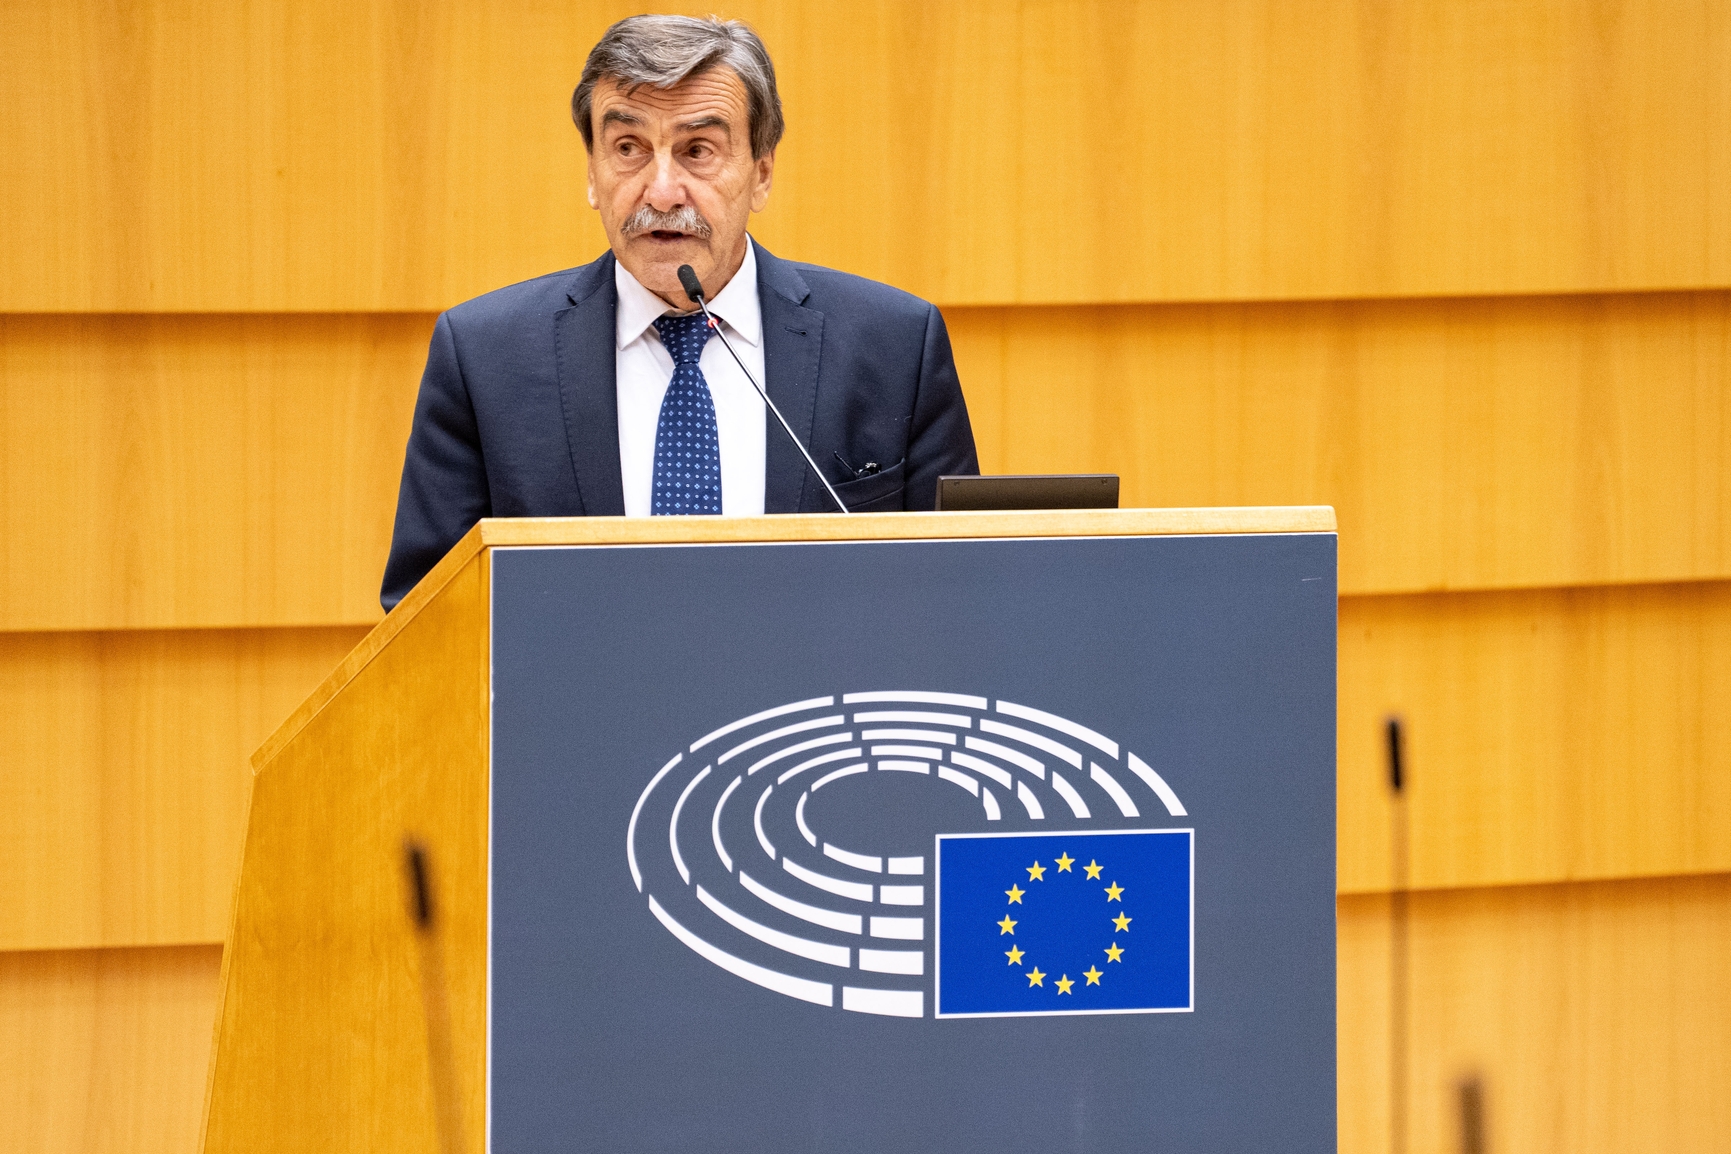 Intervento della Commissione europea per incentivare i progetti di collaborazione territoriale tra regioni transfrontaliere